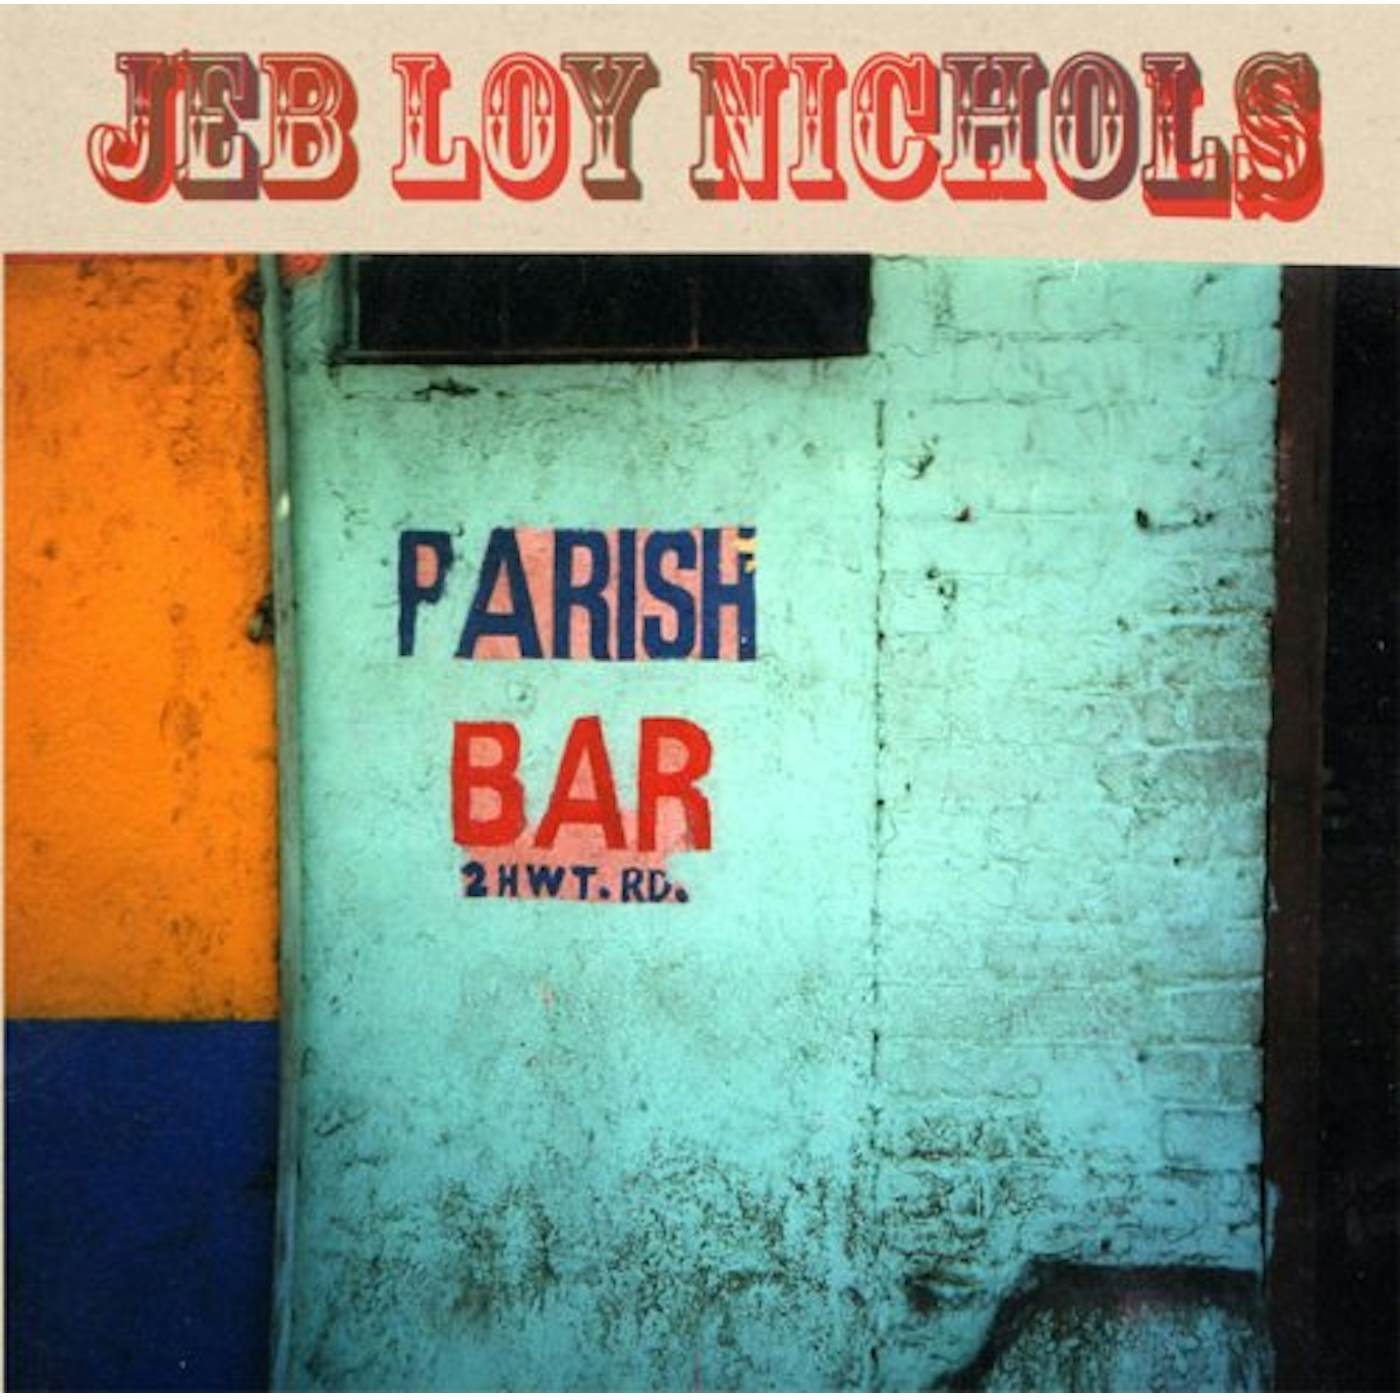 Jeb Loy Nichols Parish Bar Vinyl Record